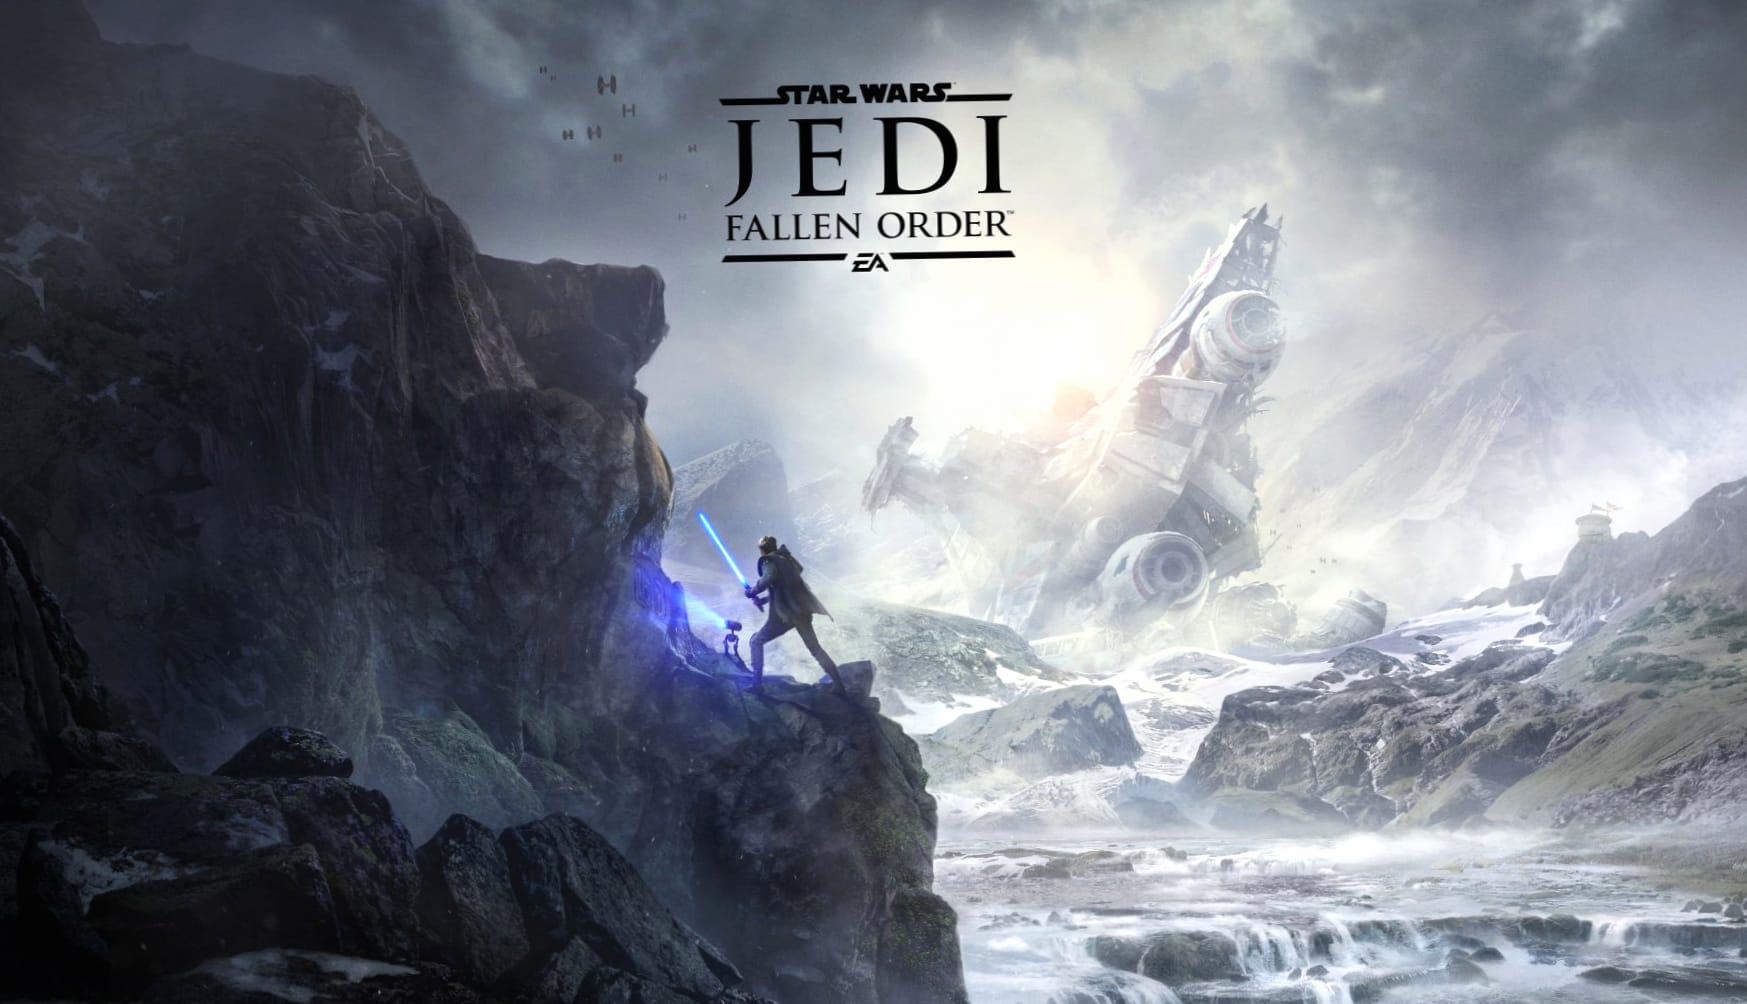 Star Wars Jedi Fallen Order at 1024 x 1024 iPad size wallpapers HD quality